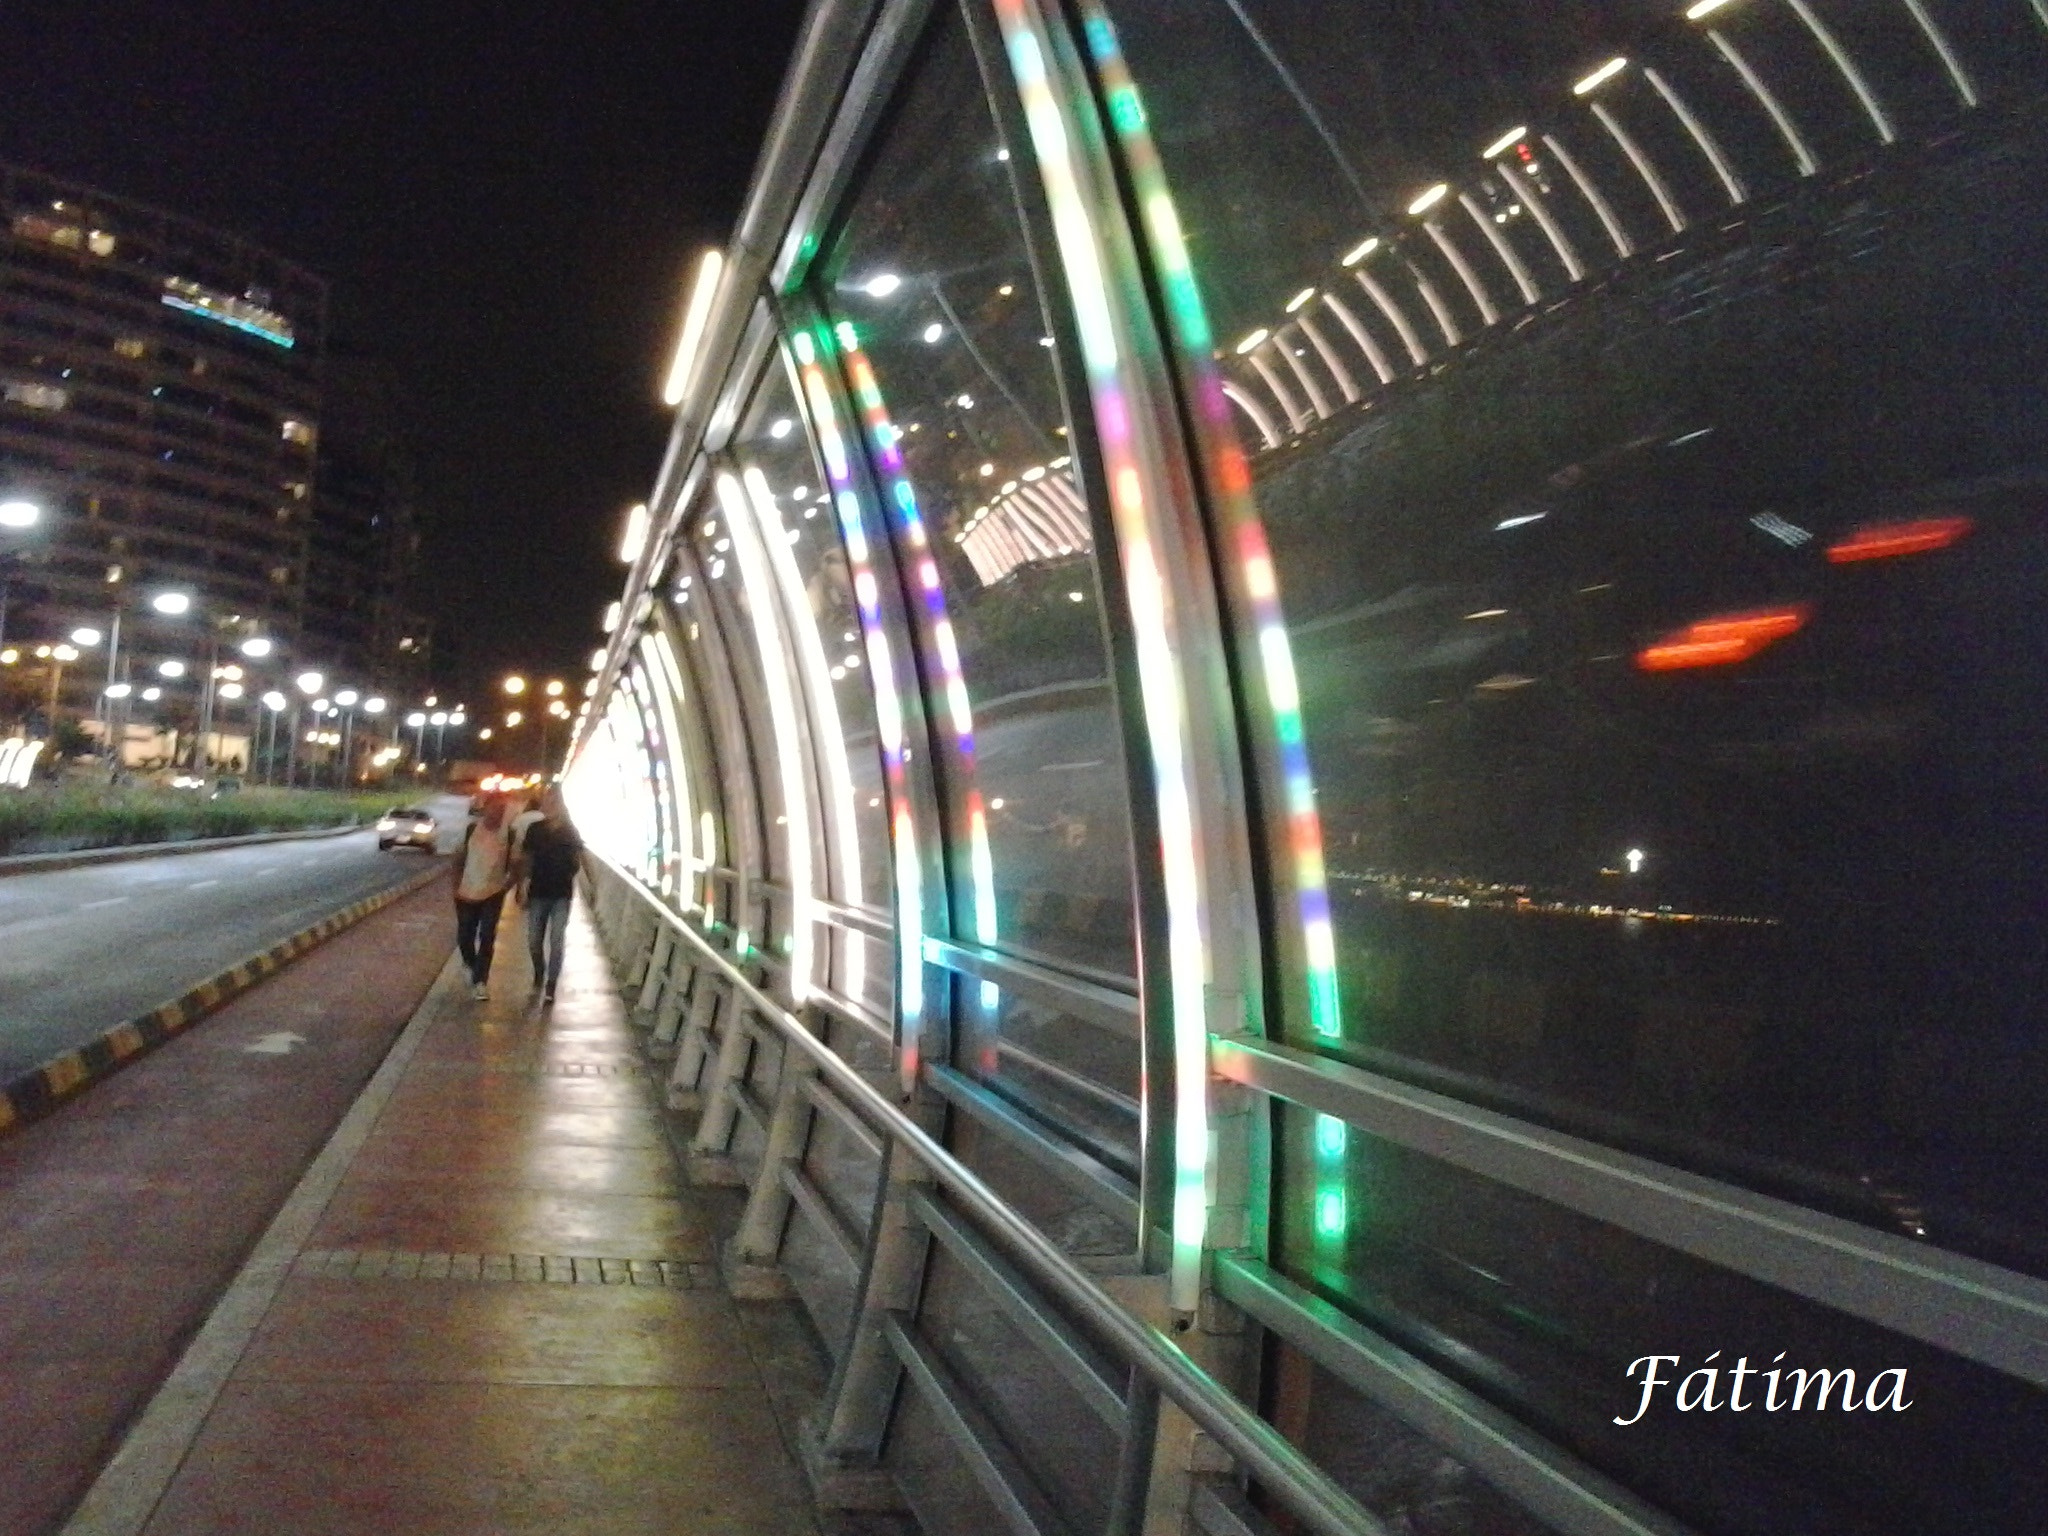 Samsung Galaxy Music Duos sample photo. El puente villena con luces de colores. photography